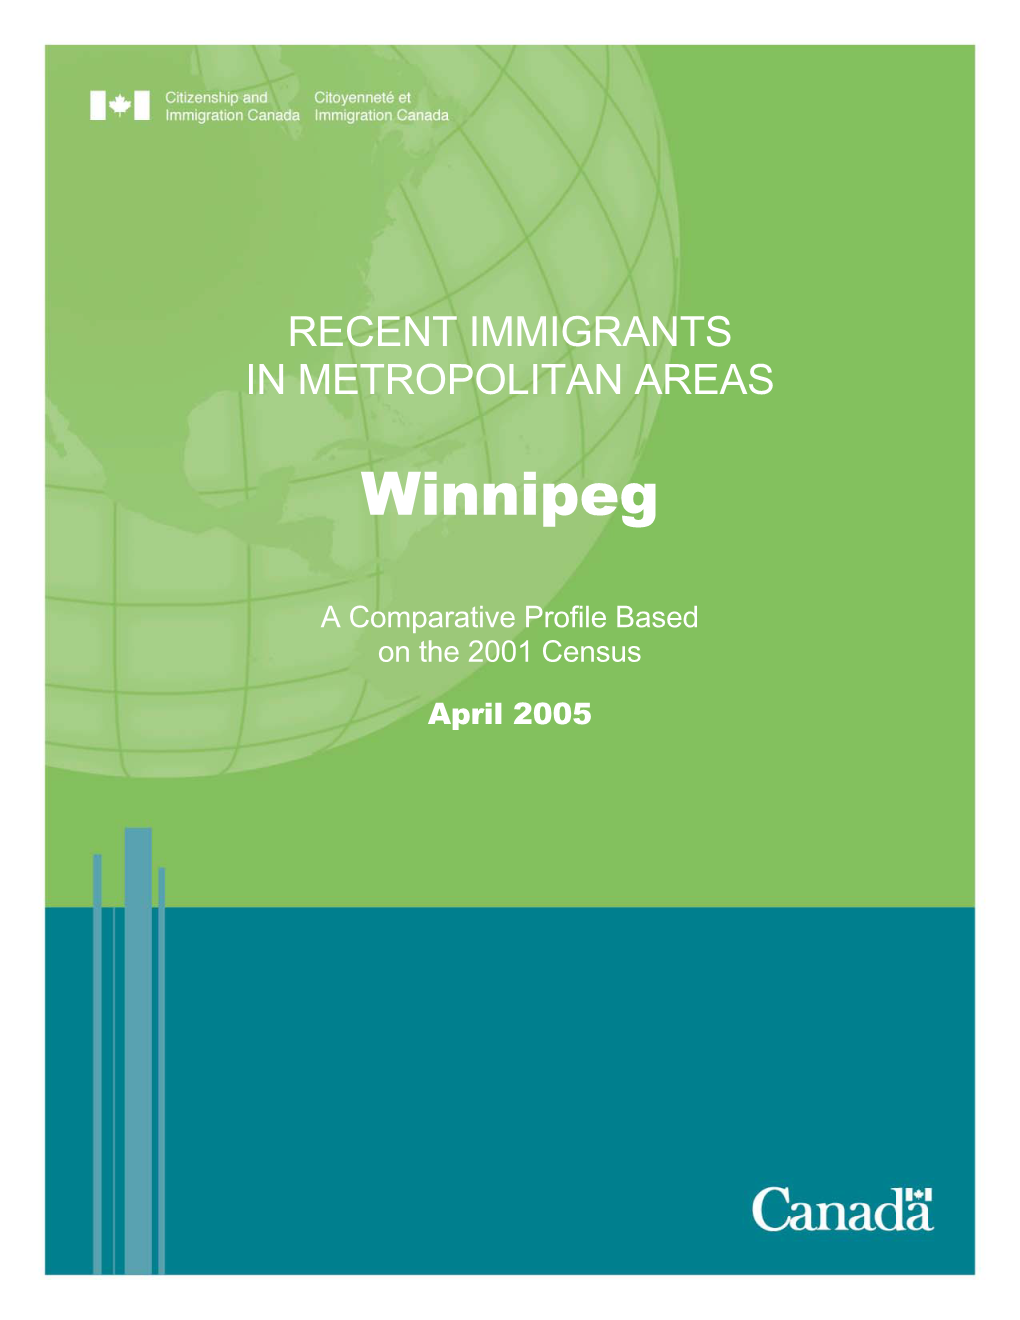 Recent Immigrants in Metropolitan Areas-Winnipeg 2001